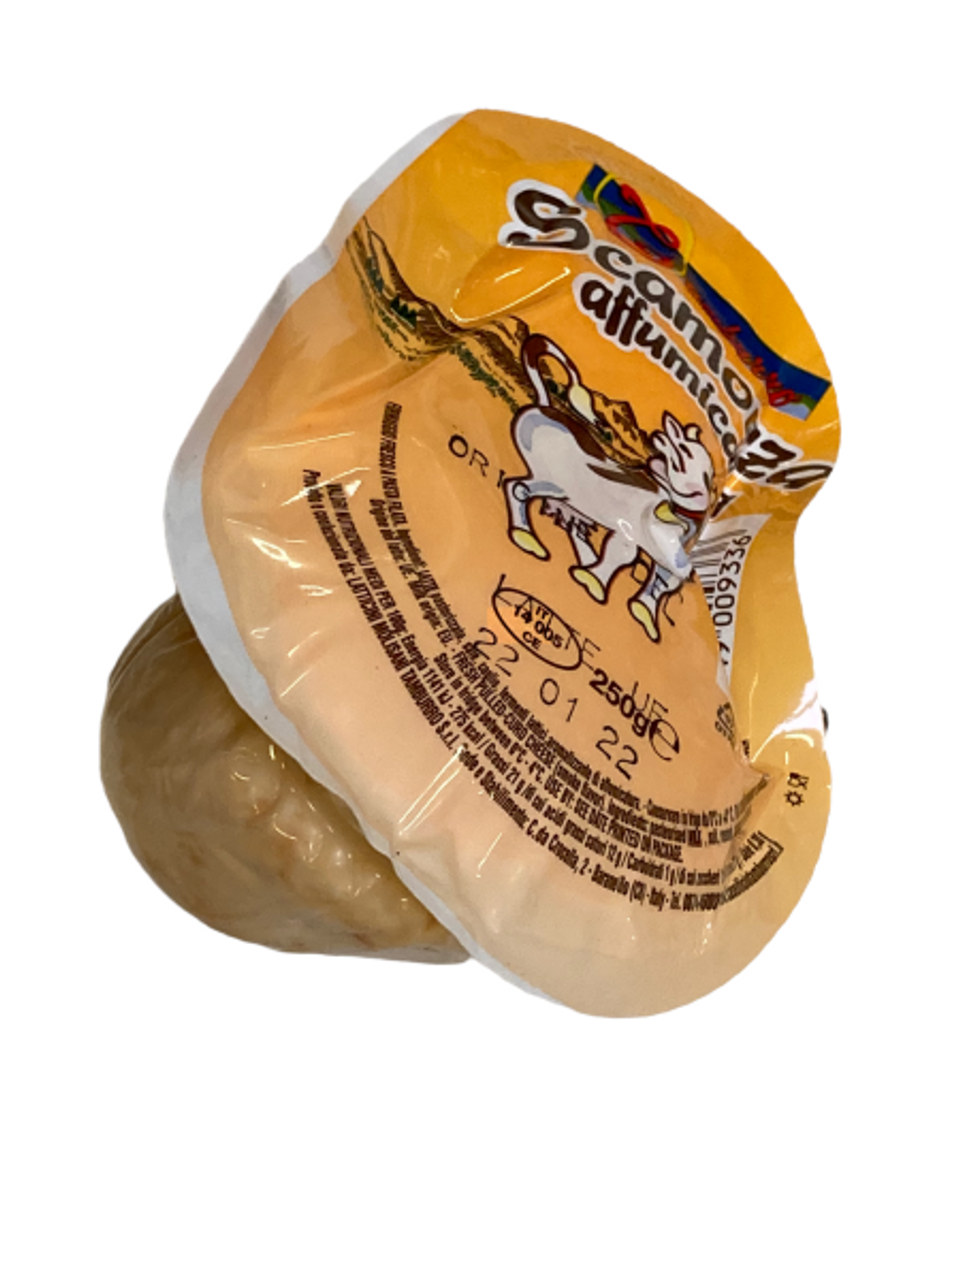 Connaissez-vous la scamorza , ce fromage italien au goût fumé ?